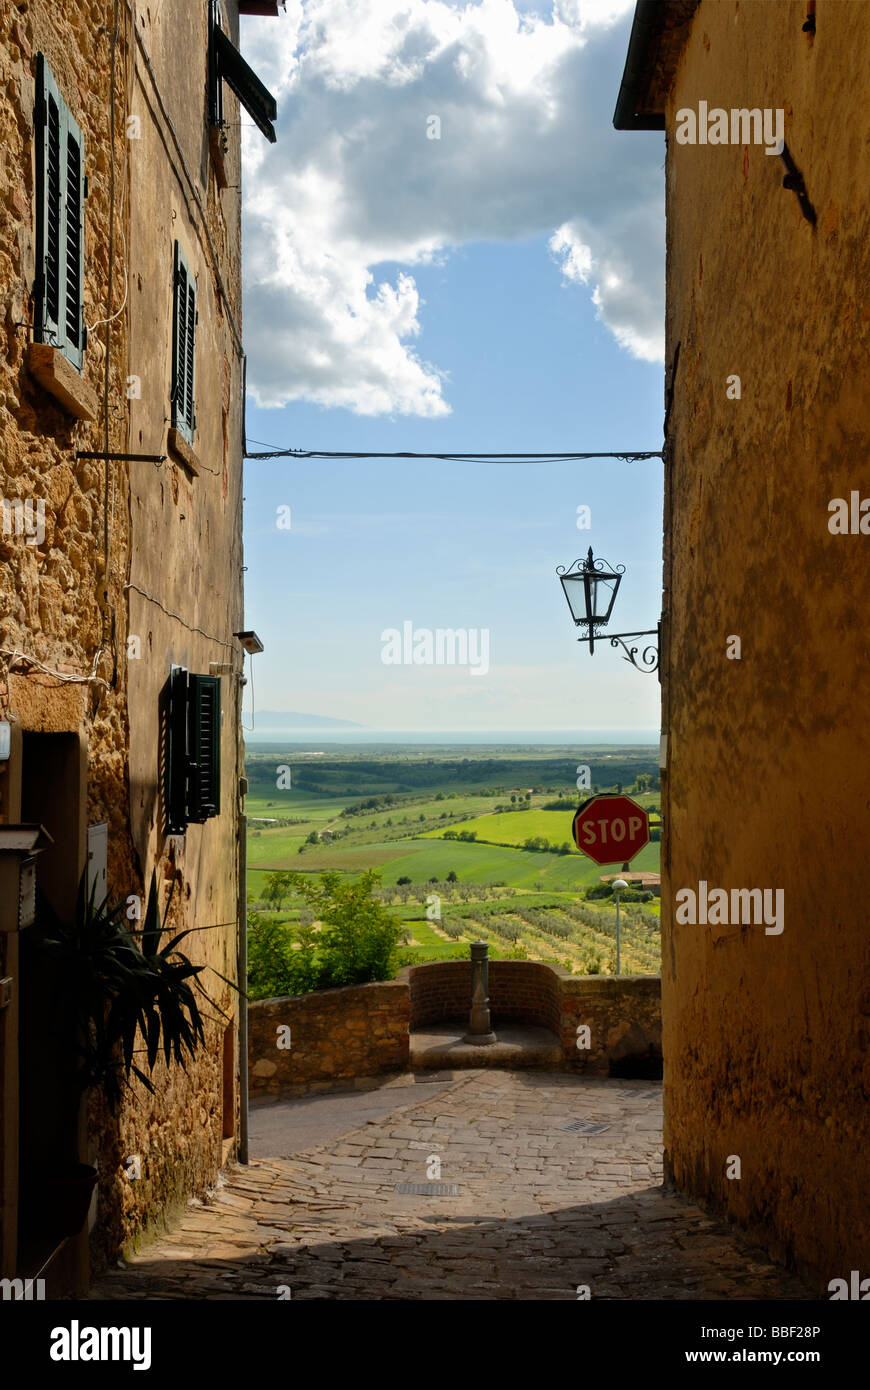 Toscane (Toscana) Italie - vue du paysage vu de entre les bâtiments de la ville médiévale de Casale Marittimo. Banque D'Images